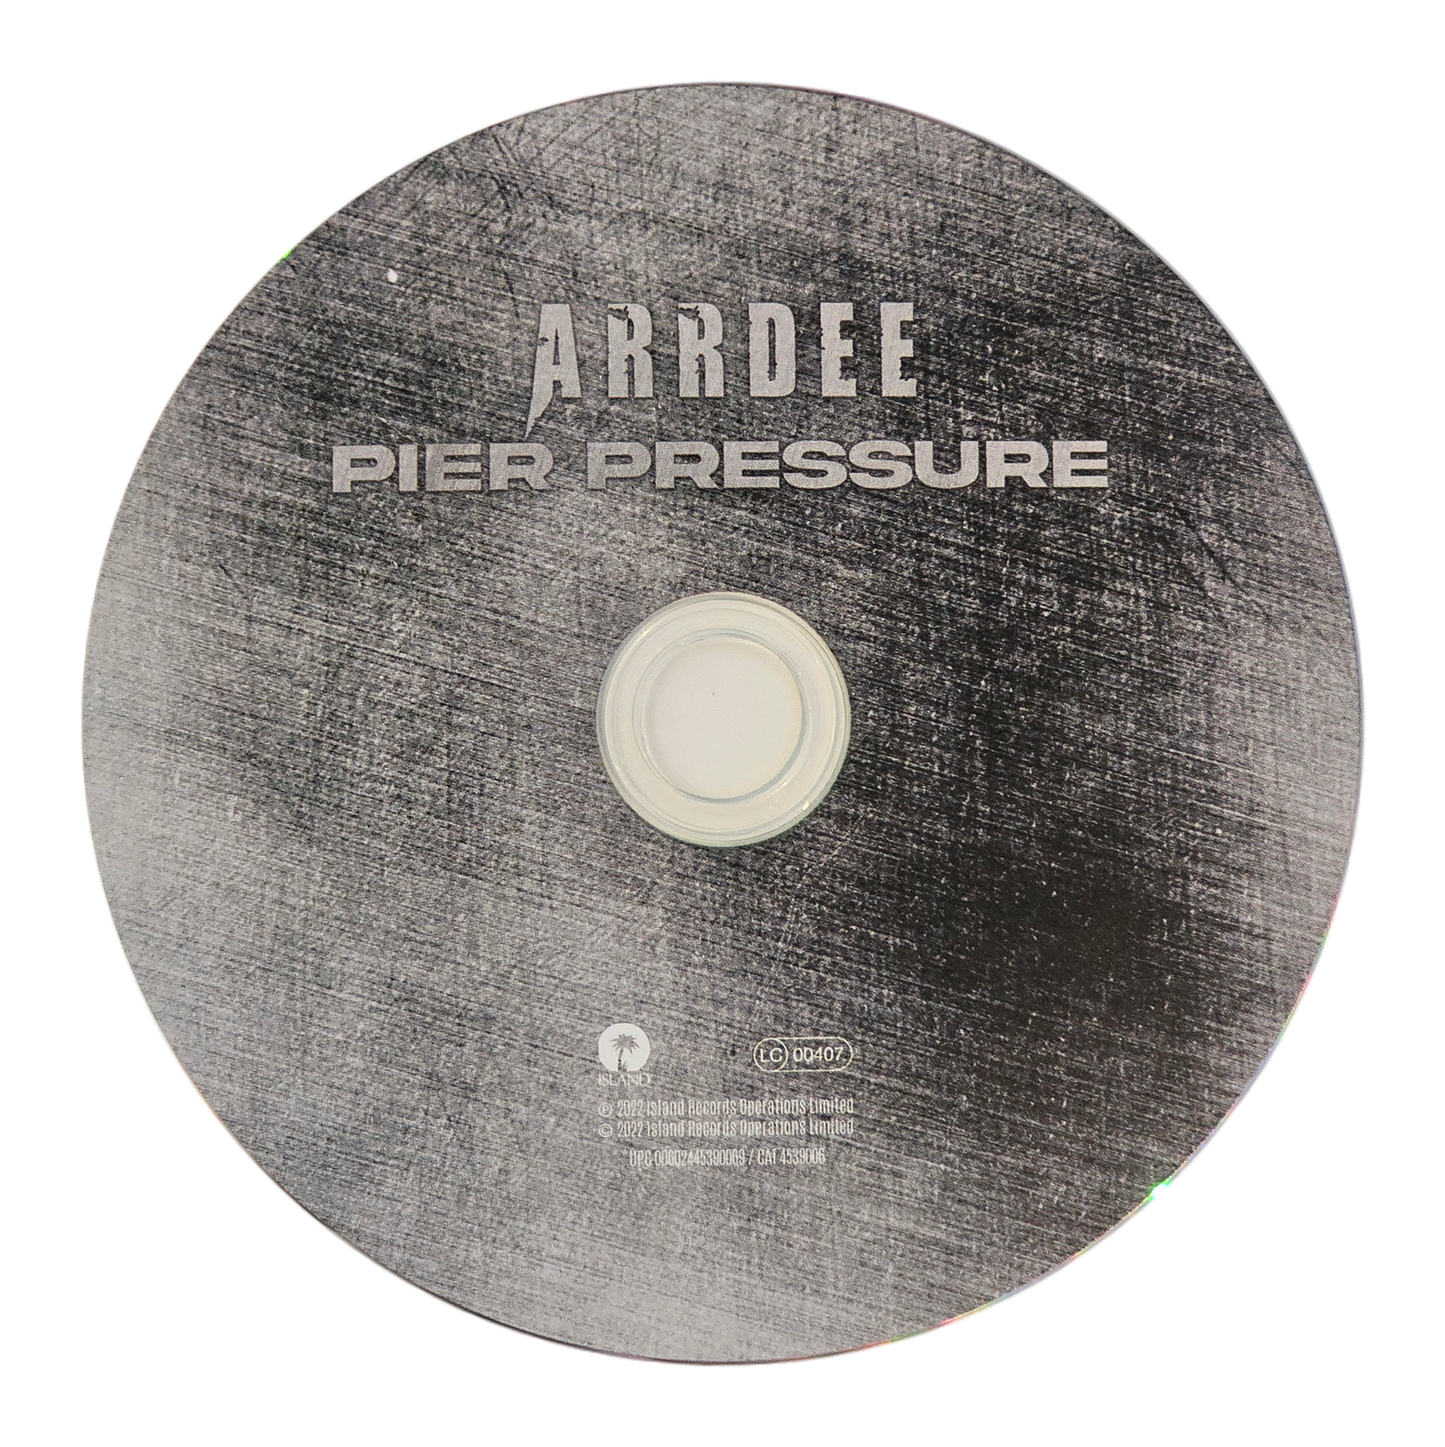 Framed display of Arrdee signed Pier Pressure CD